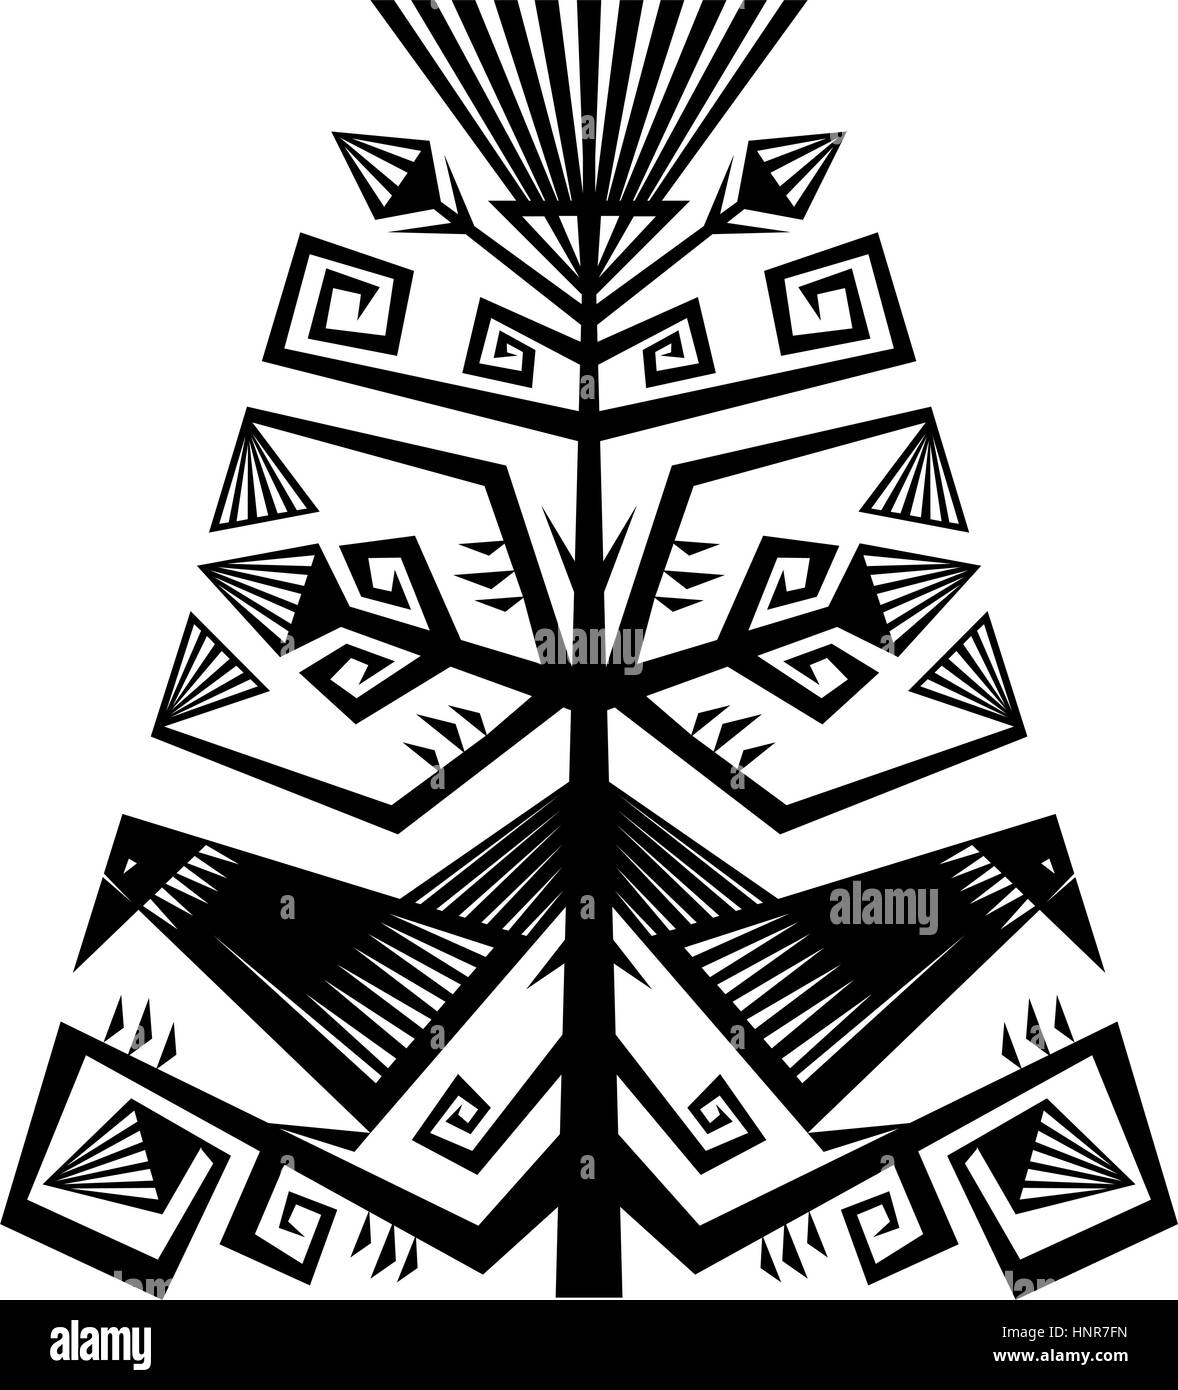 Geometrische Kunst-Komposition mit Blumen und Vögel. Schwarz / Weiß-Vektor-Silhouette. Isoliert auf weiss. Stock Vektor